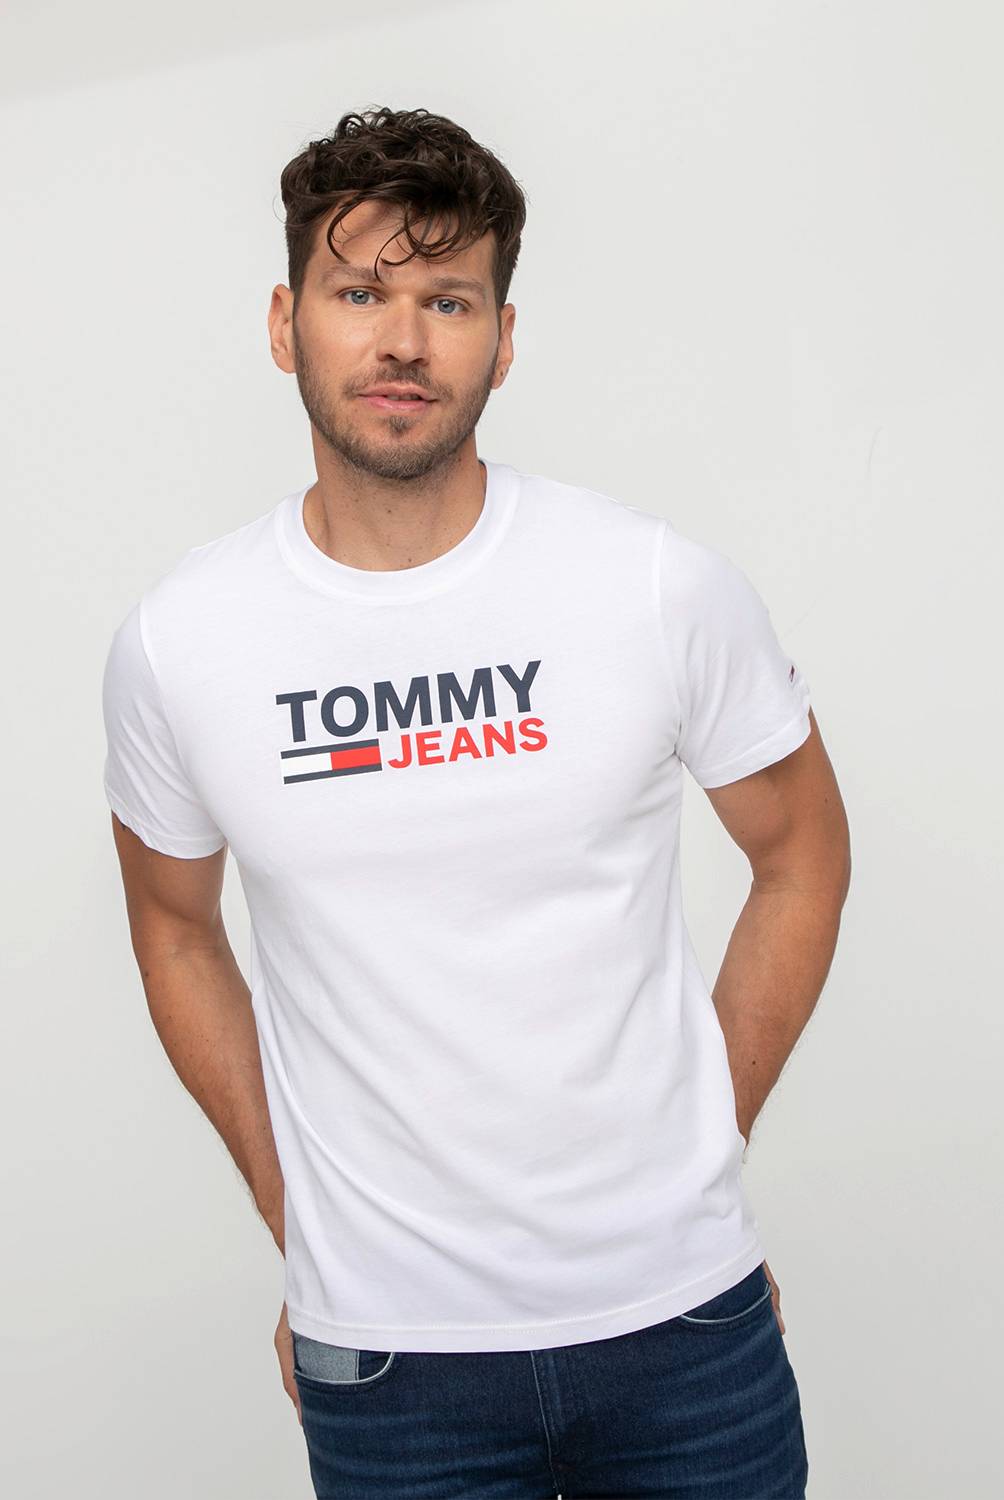 TOMMY JEANS - Polera Manga Corta Hombre Tommy Jeans